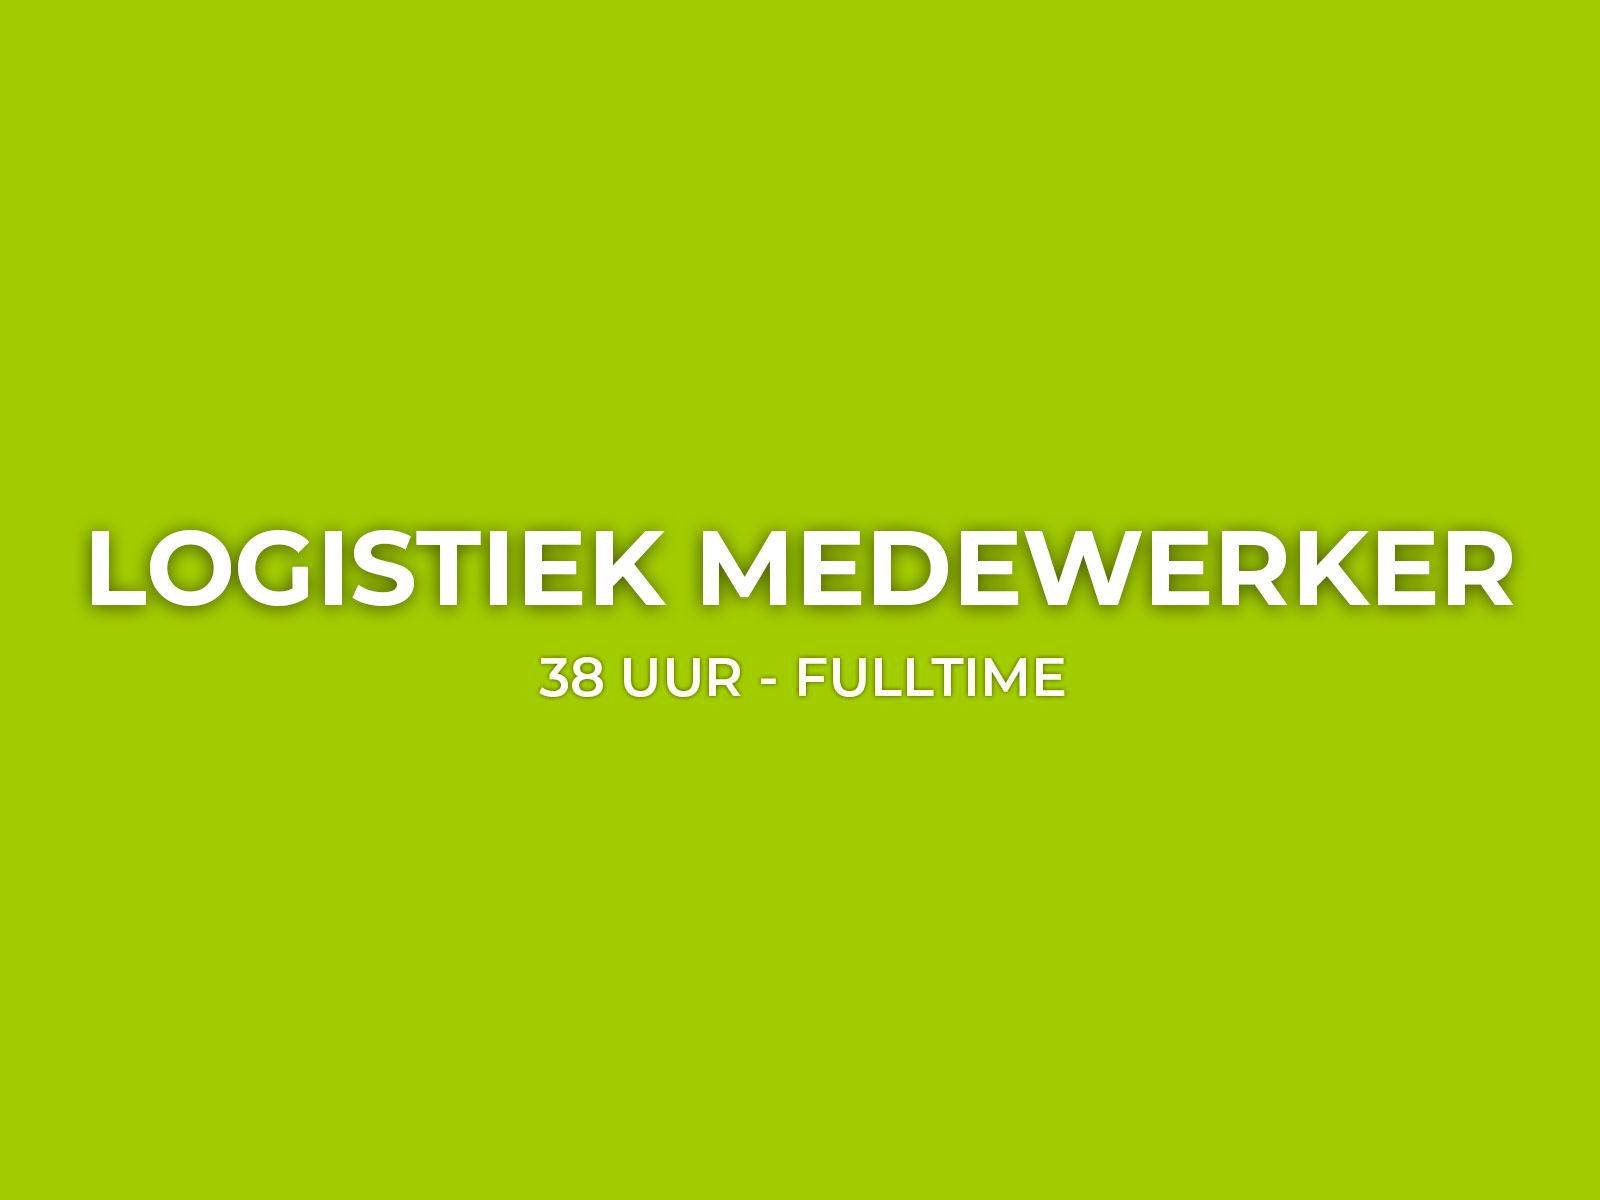 Bekijk hier de vacature voor Logistiek Medewerker Full-time bij VLOERLOODS.nl